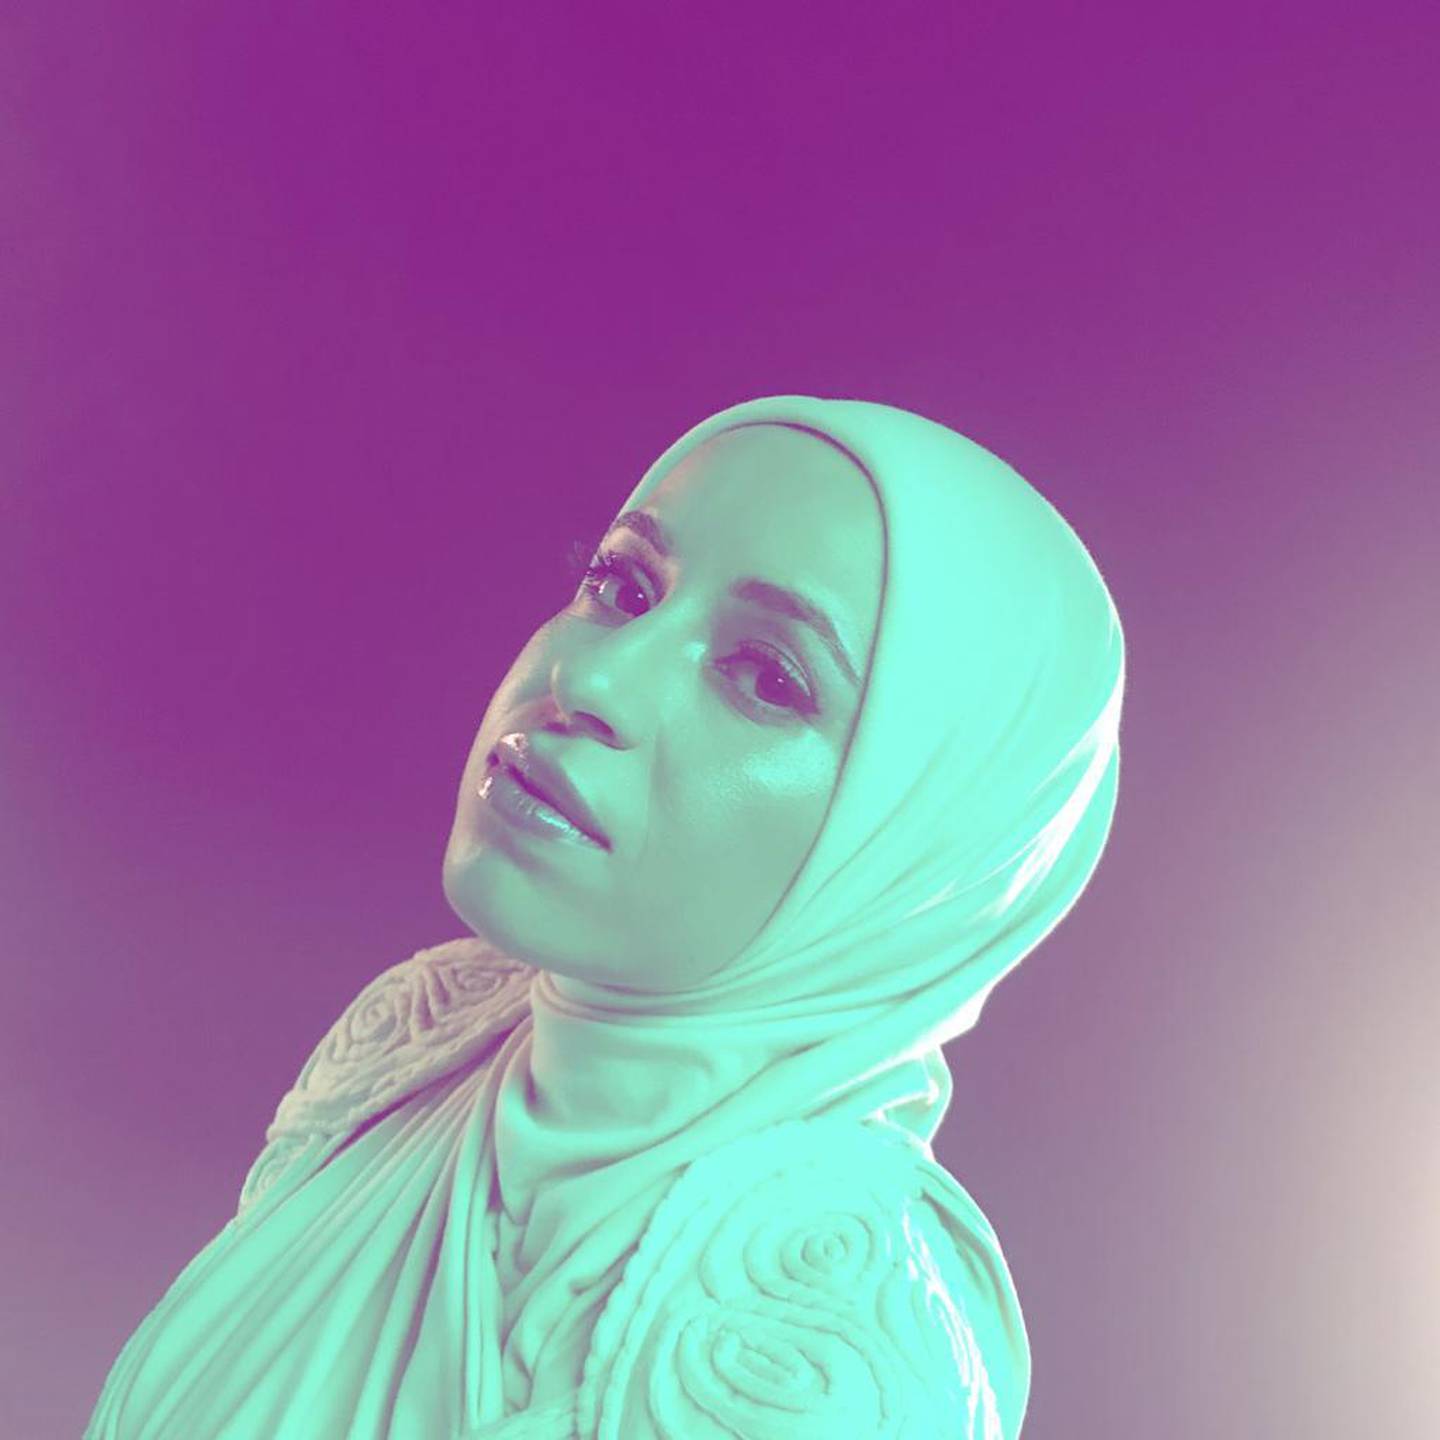 Haydar in her 'Suicide Doors' music video. Courtesy Mona Haydar.